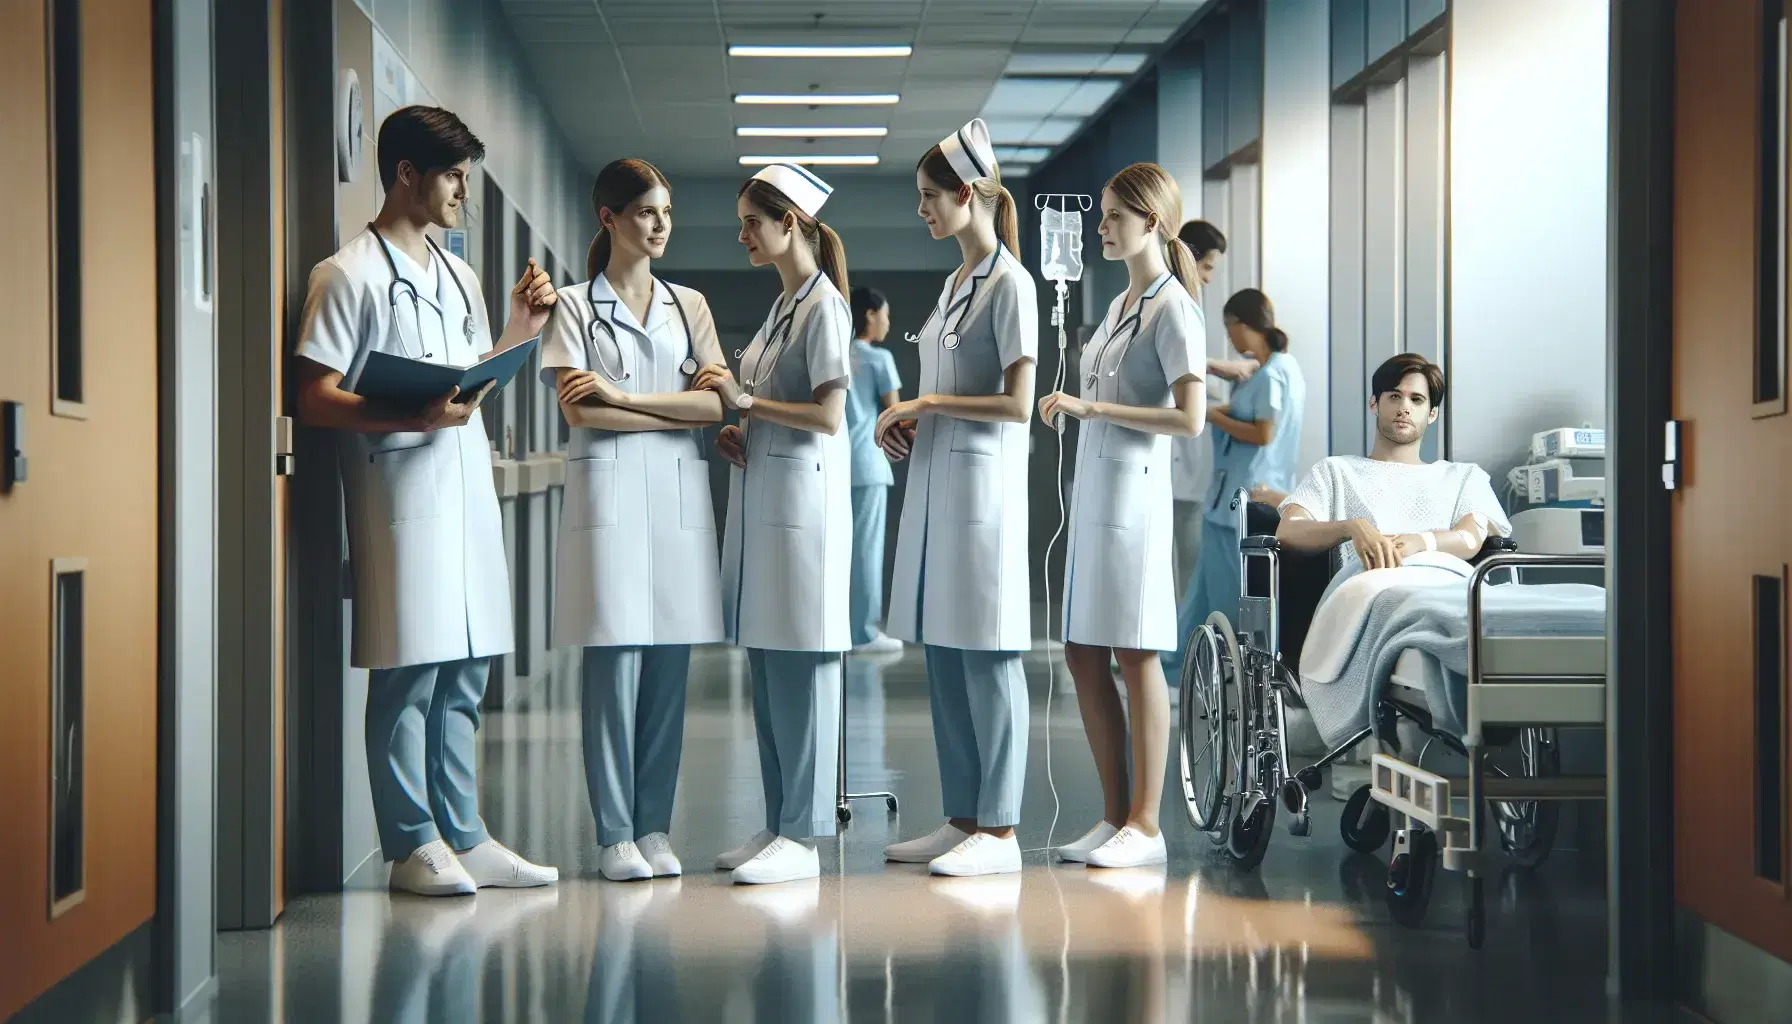 Profesionales de enfermería trabajando en un hospital, con uno ajustando un suero a un paciente en silla de ruedas y otros conversando.